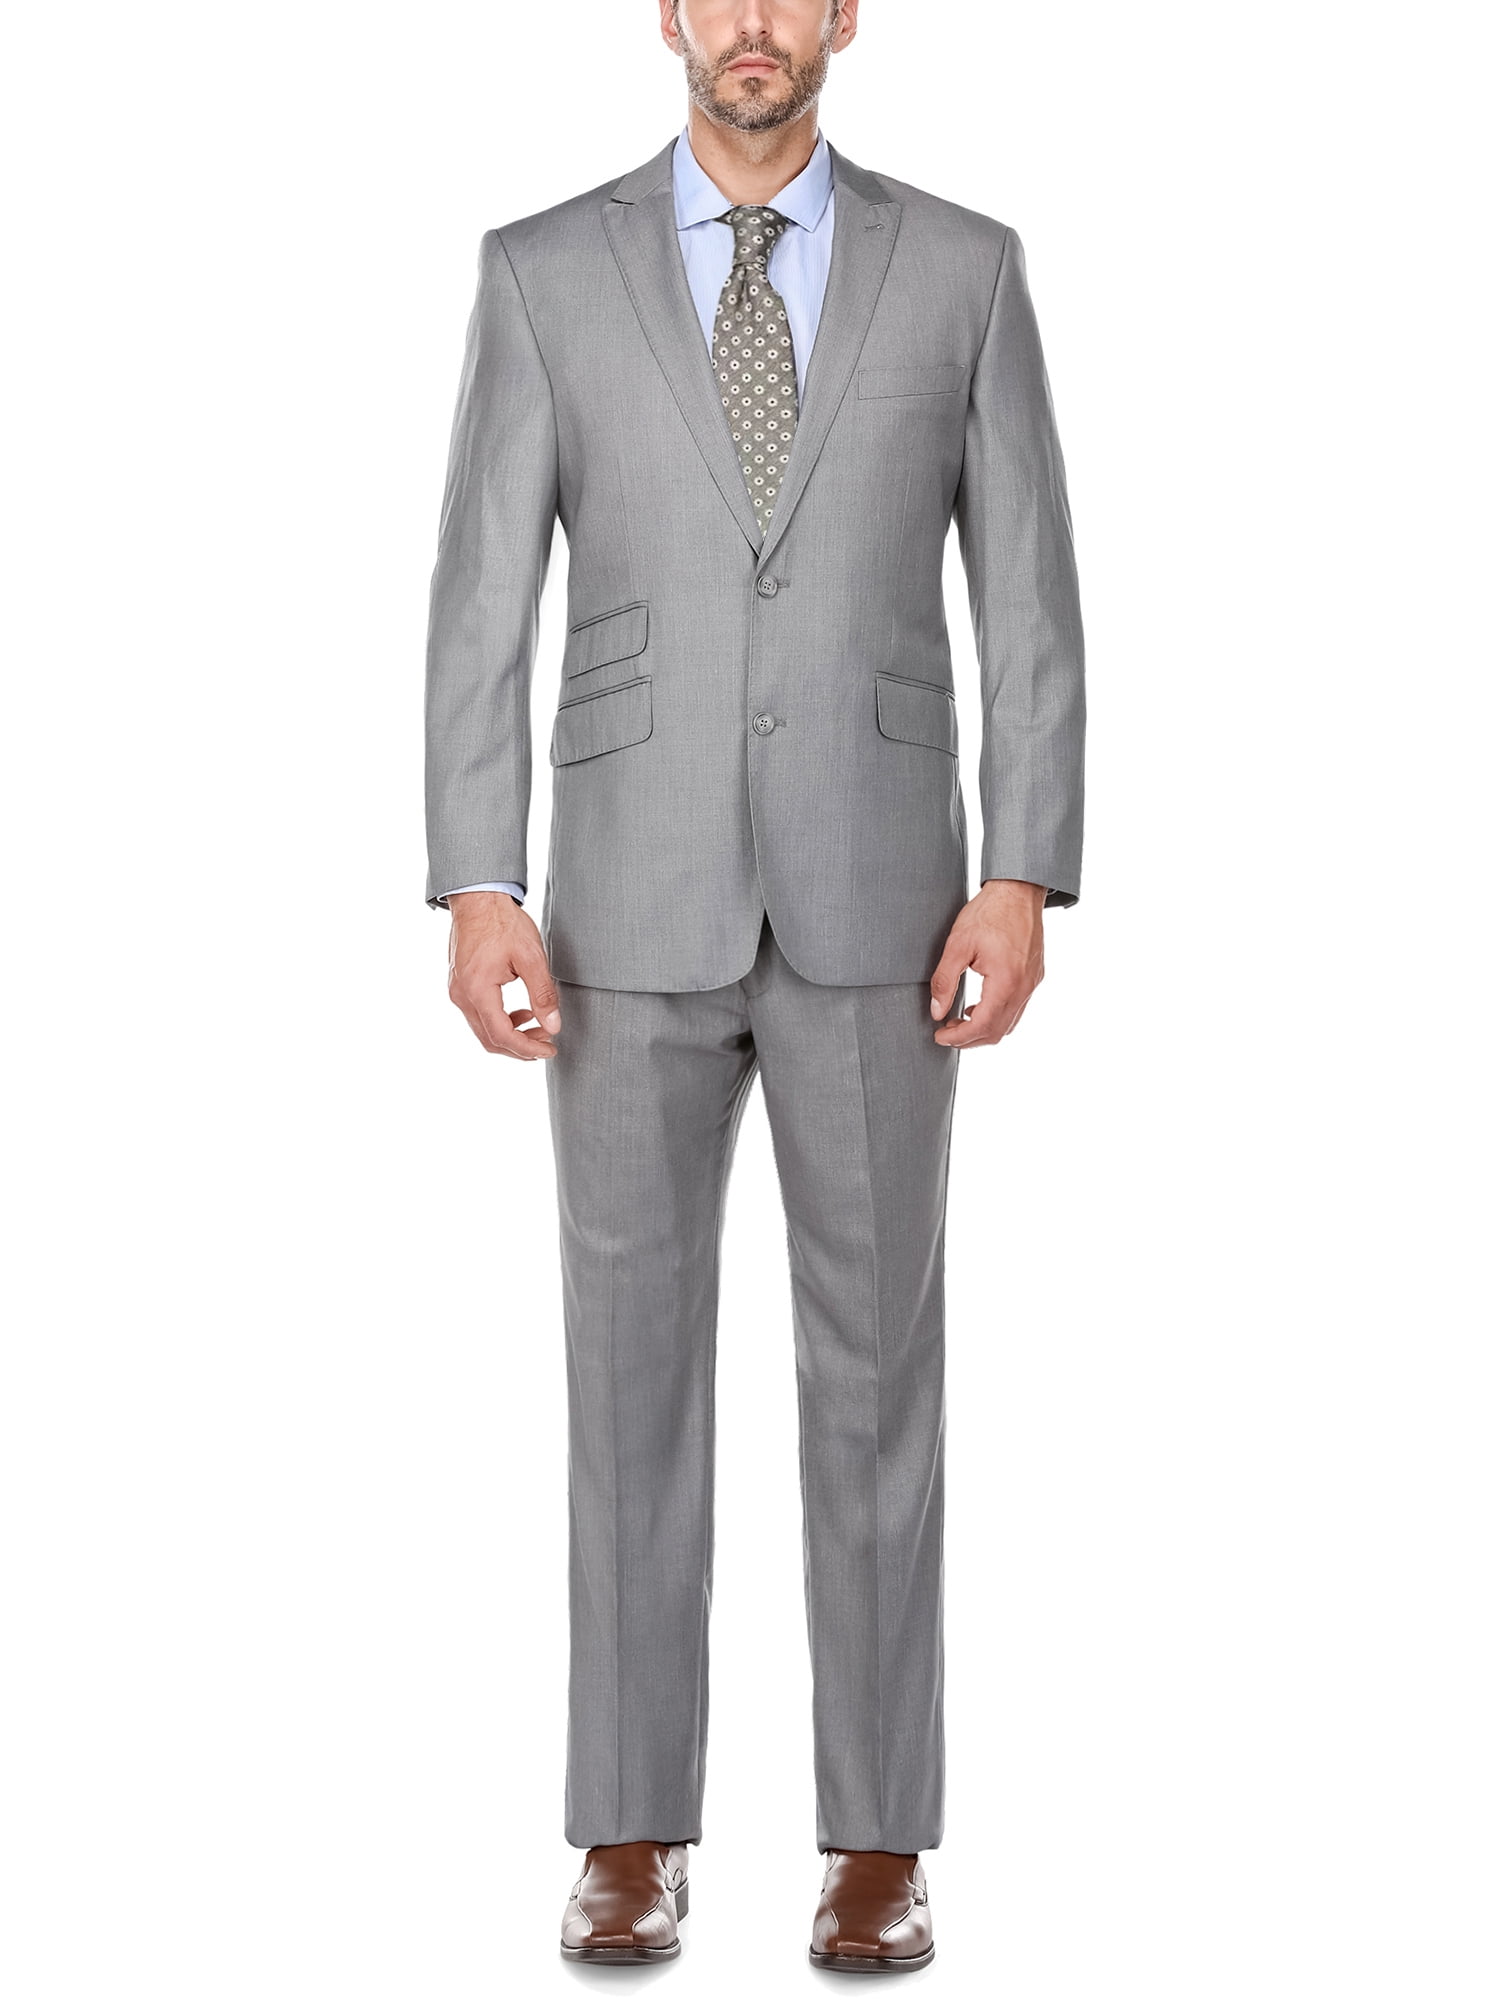 Big Men' s Charcoal Grey Peak Lapel Classic Fit Two Piece Suit